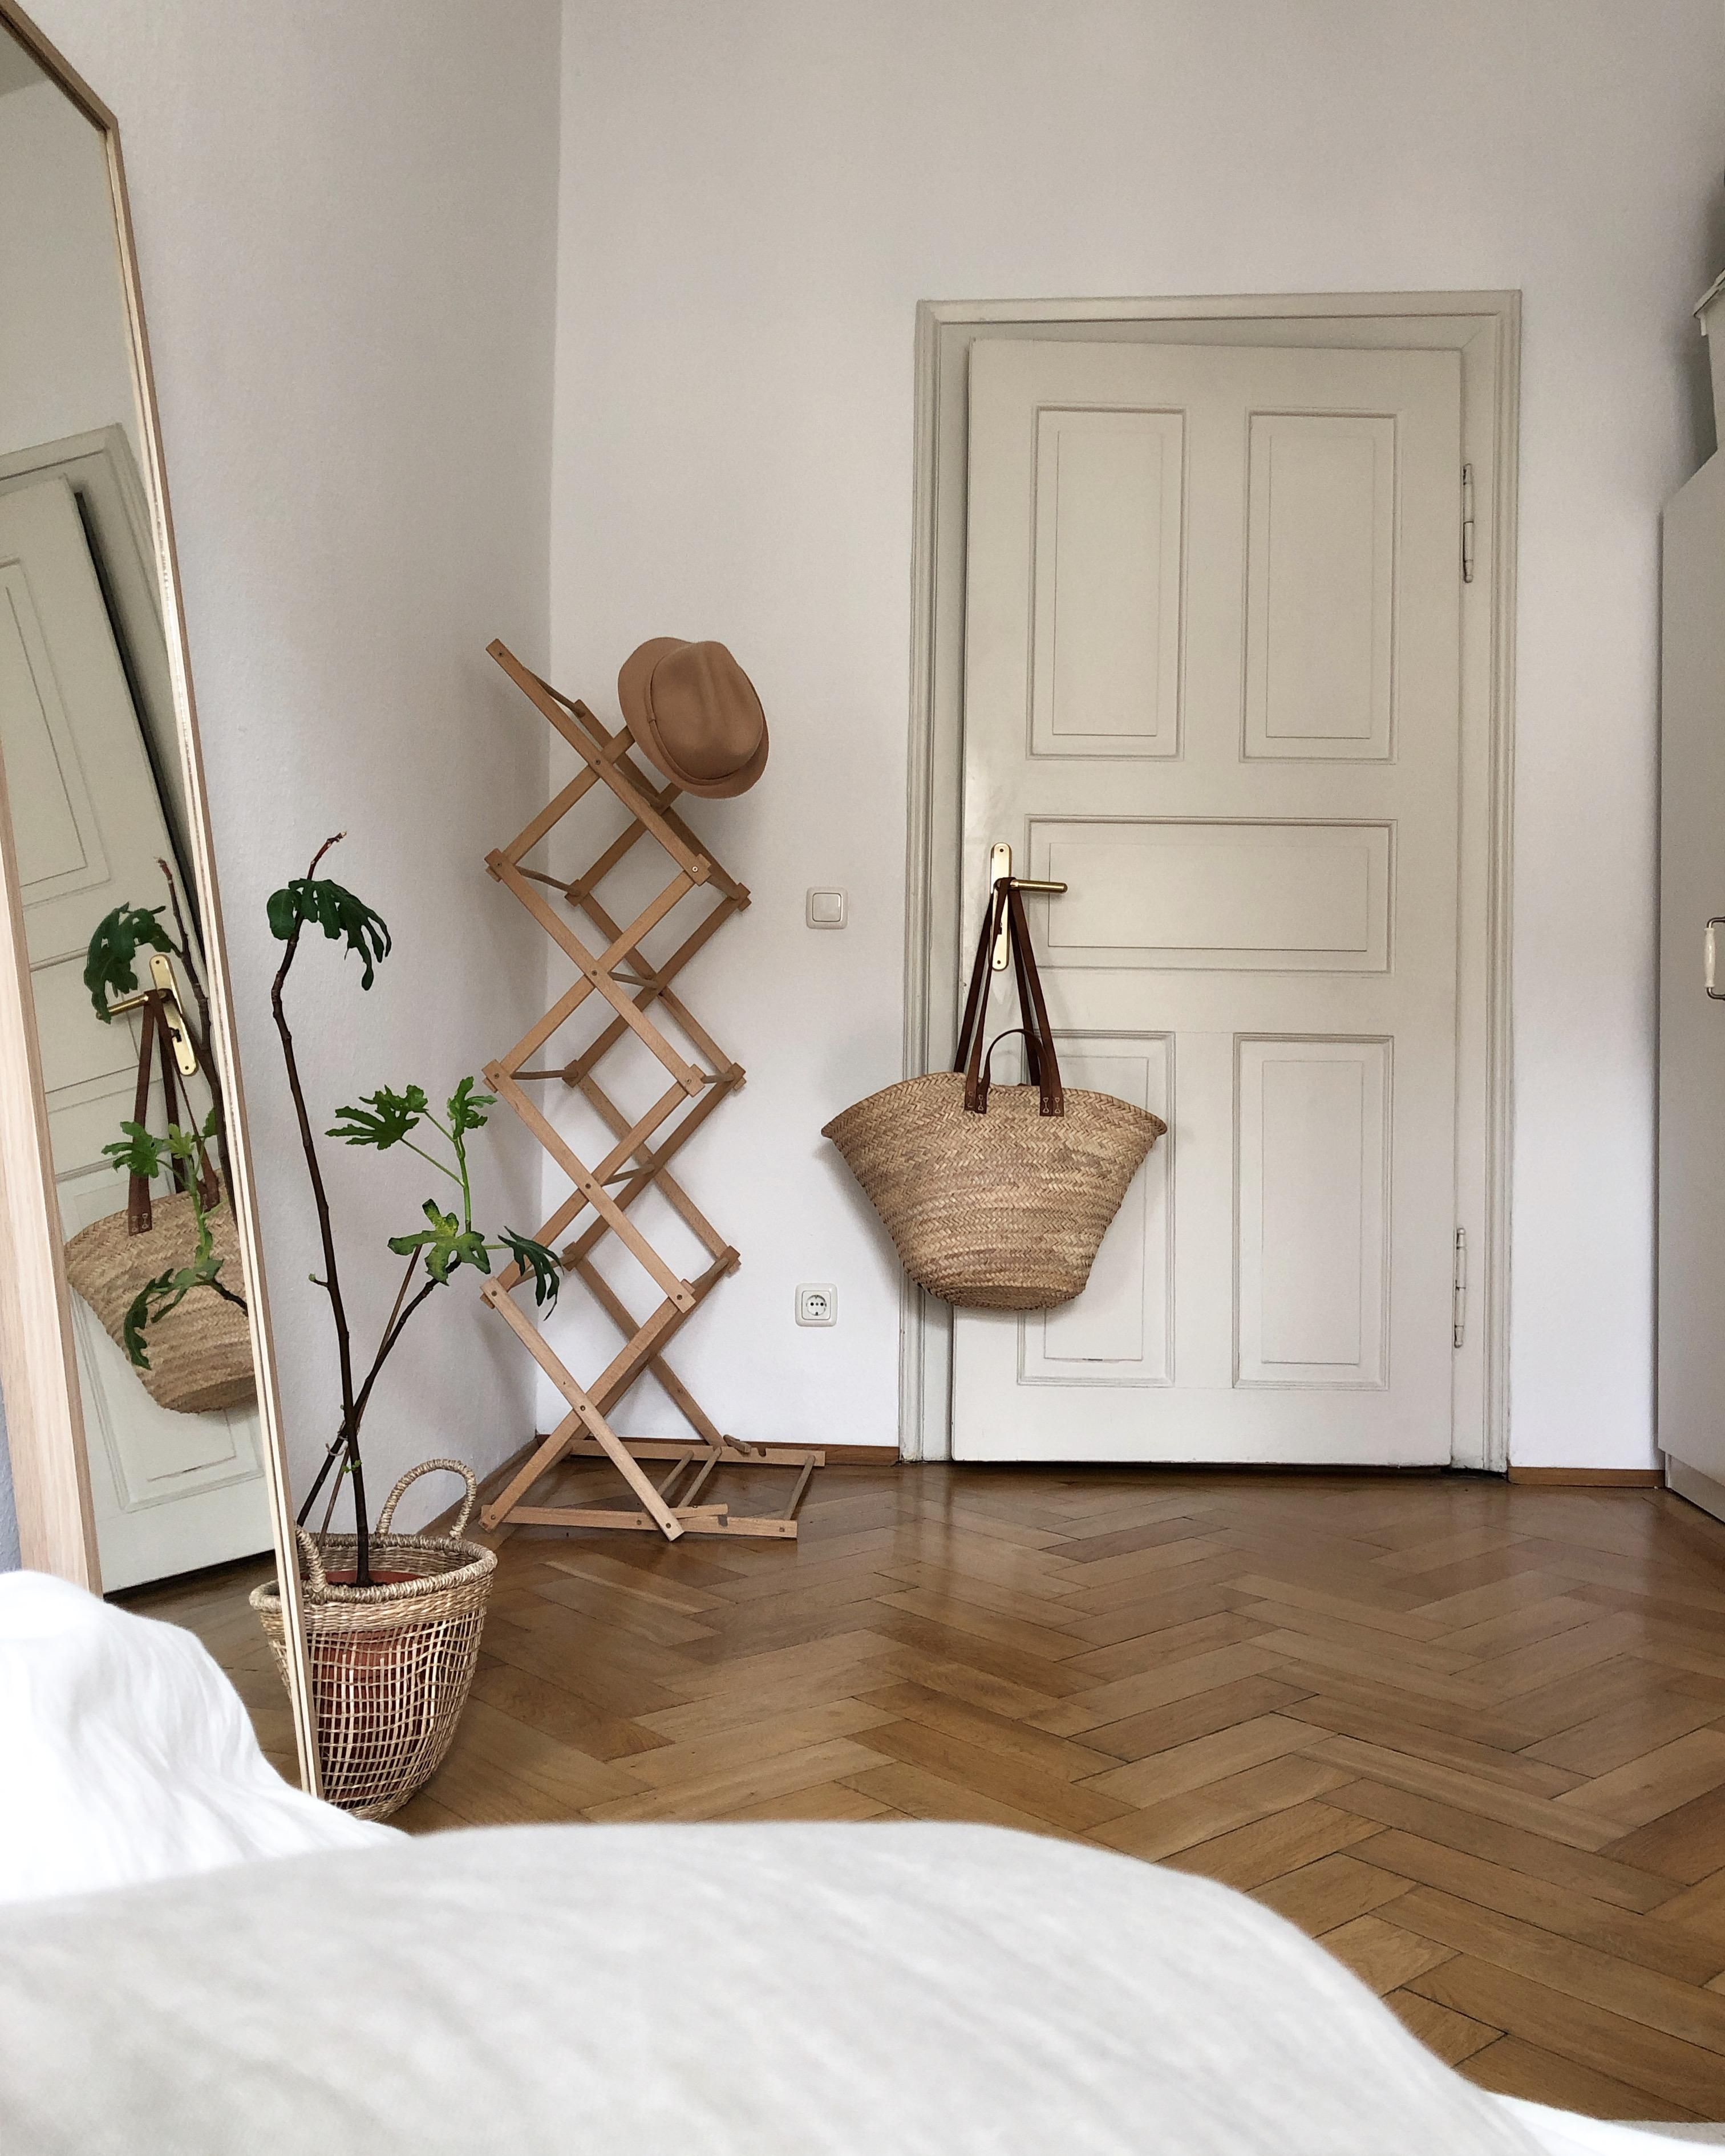 Guten Morgen aus dem #schlafzimmer _ #altbau #dielenboden #minimalistisch